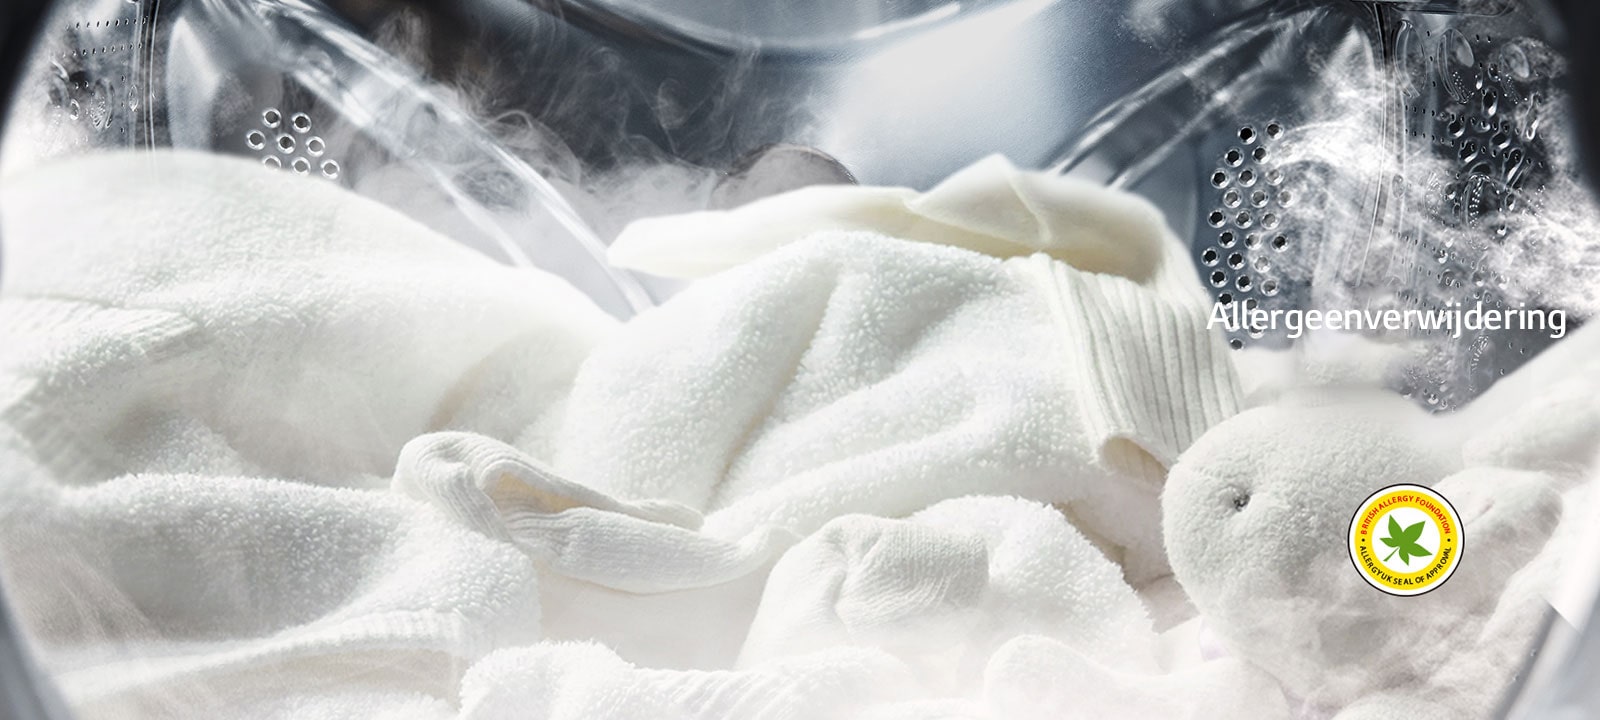 Een zachte witte badjas en een knuffeldier worden getoond met stoom in de trommel van de wasmachine.